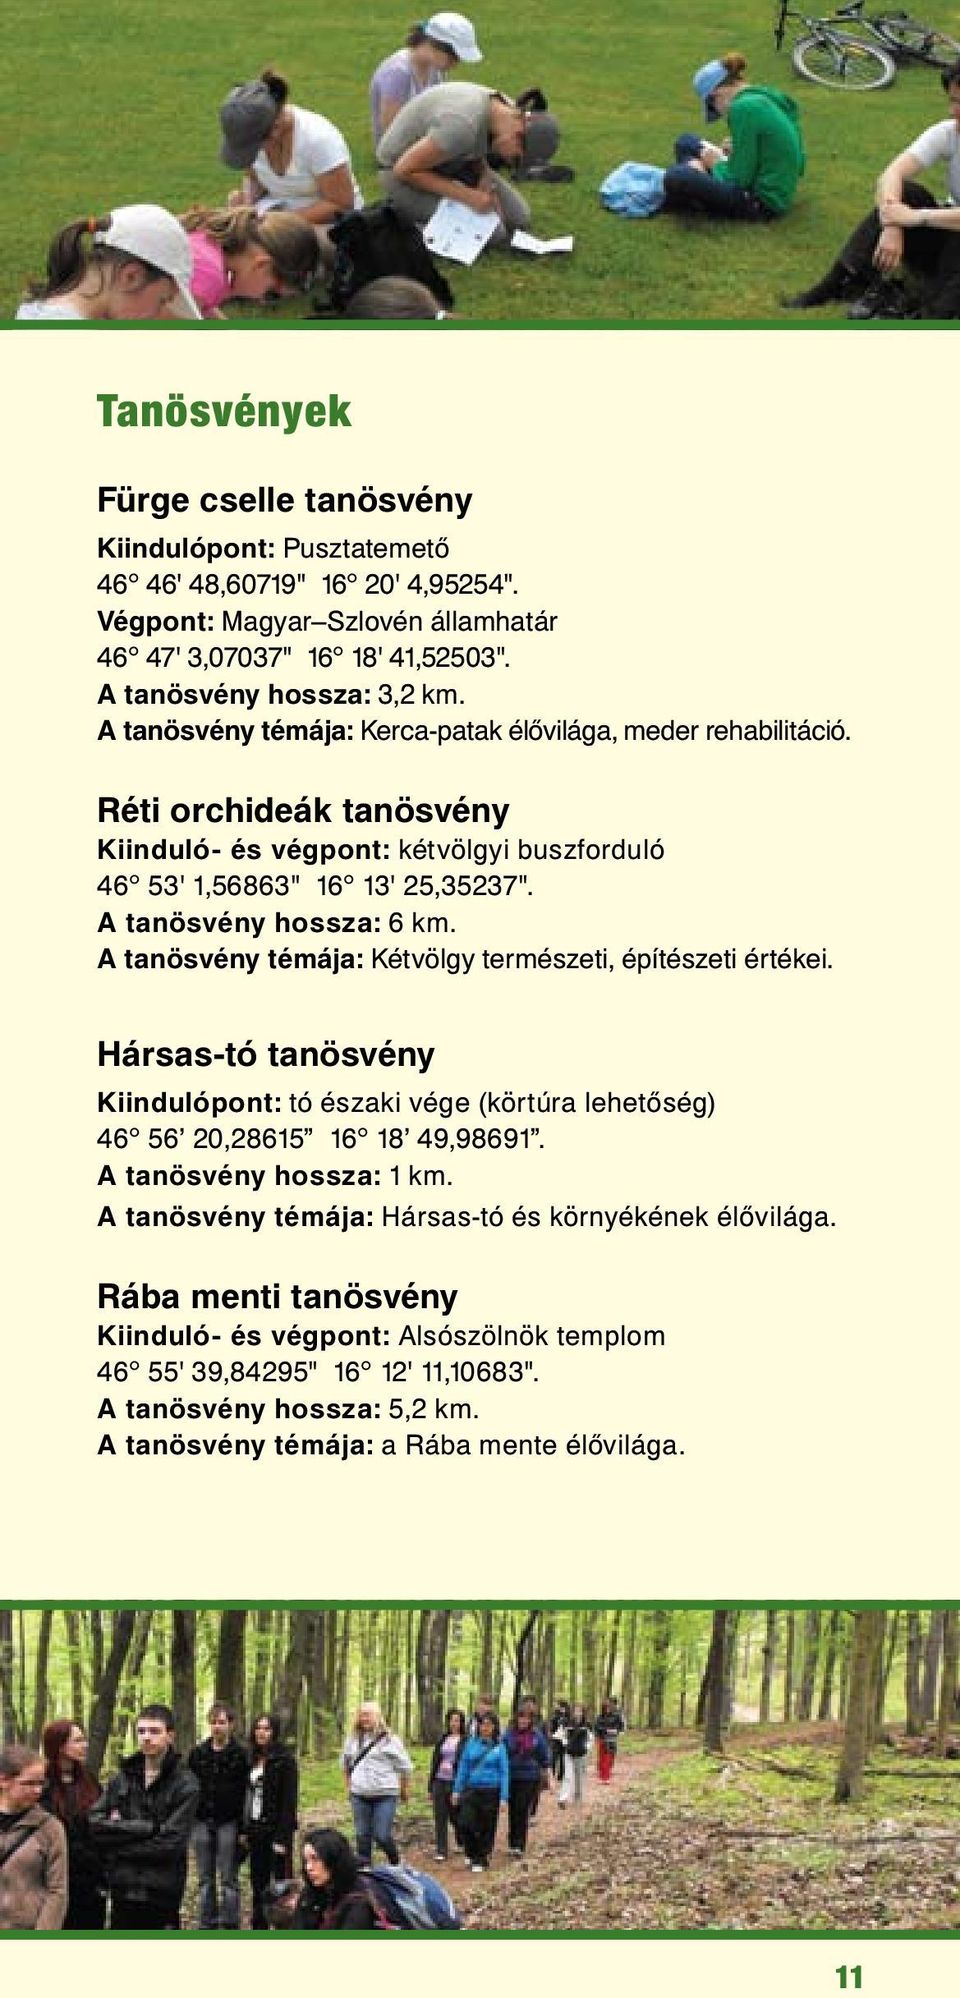 A tanösvény témája: Kétvölgy természeti, építészeti értékei. Hársas-tó tanösvény Kiindulópont: tó északi vége (körtúra lehetőség) 46 56 20,28615 16 18 49,98691. A tanösvény hossza: 1 km.